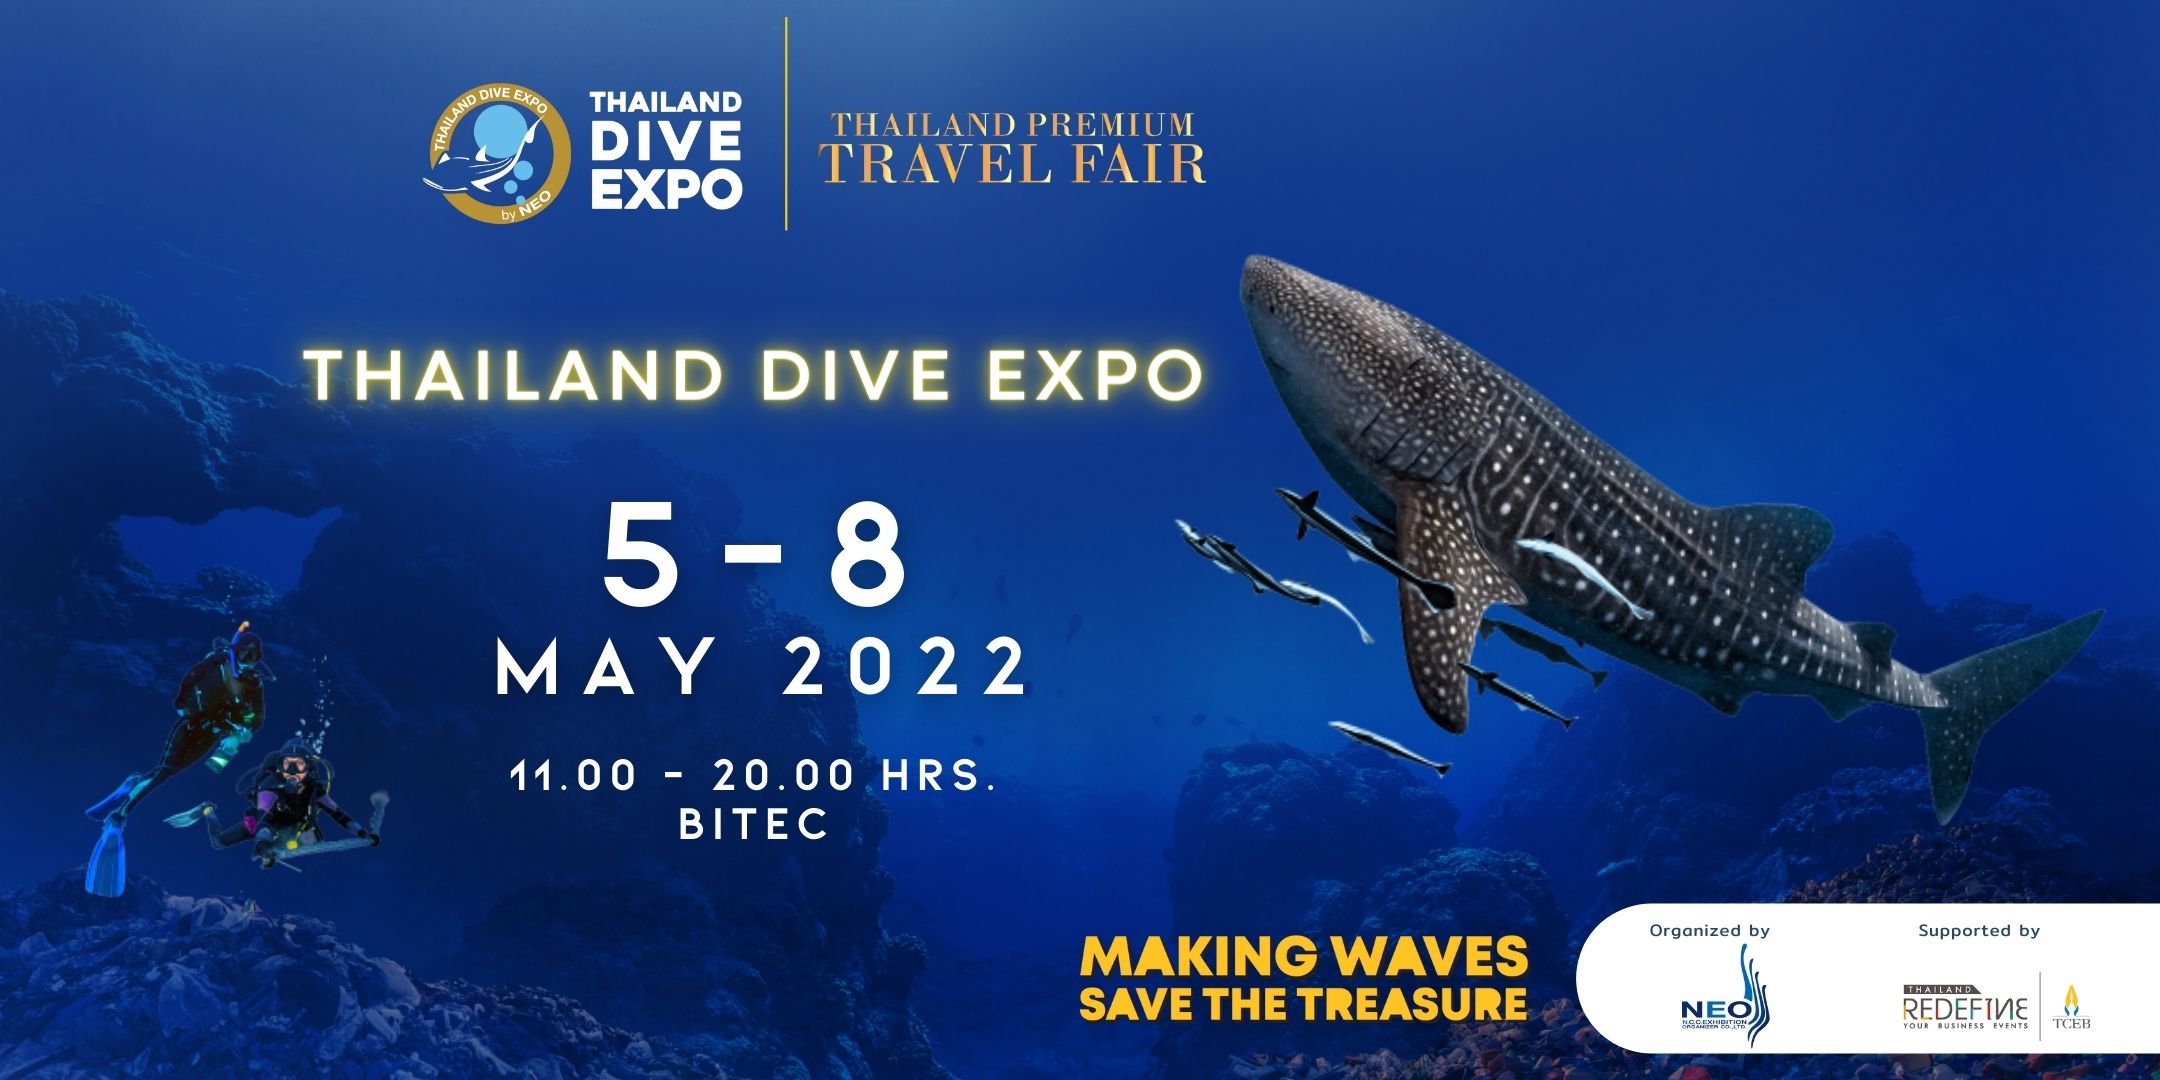 Thailand Dive Expo, Bangkok, Thailand